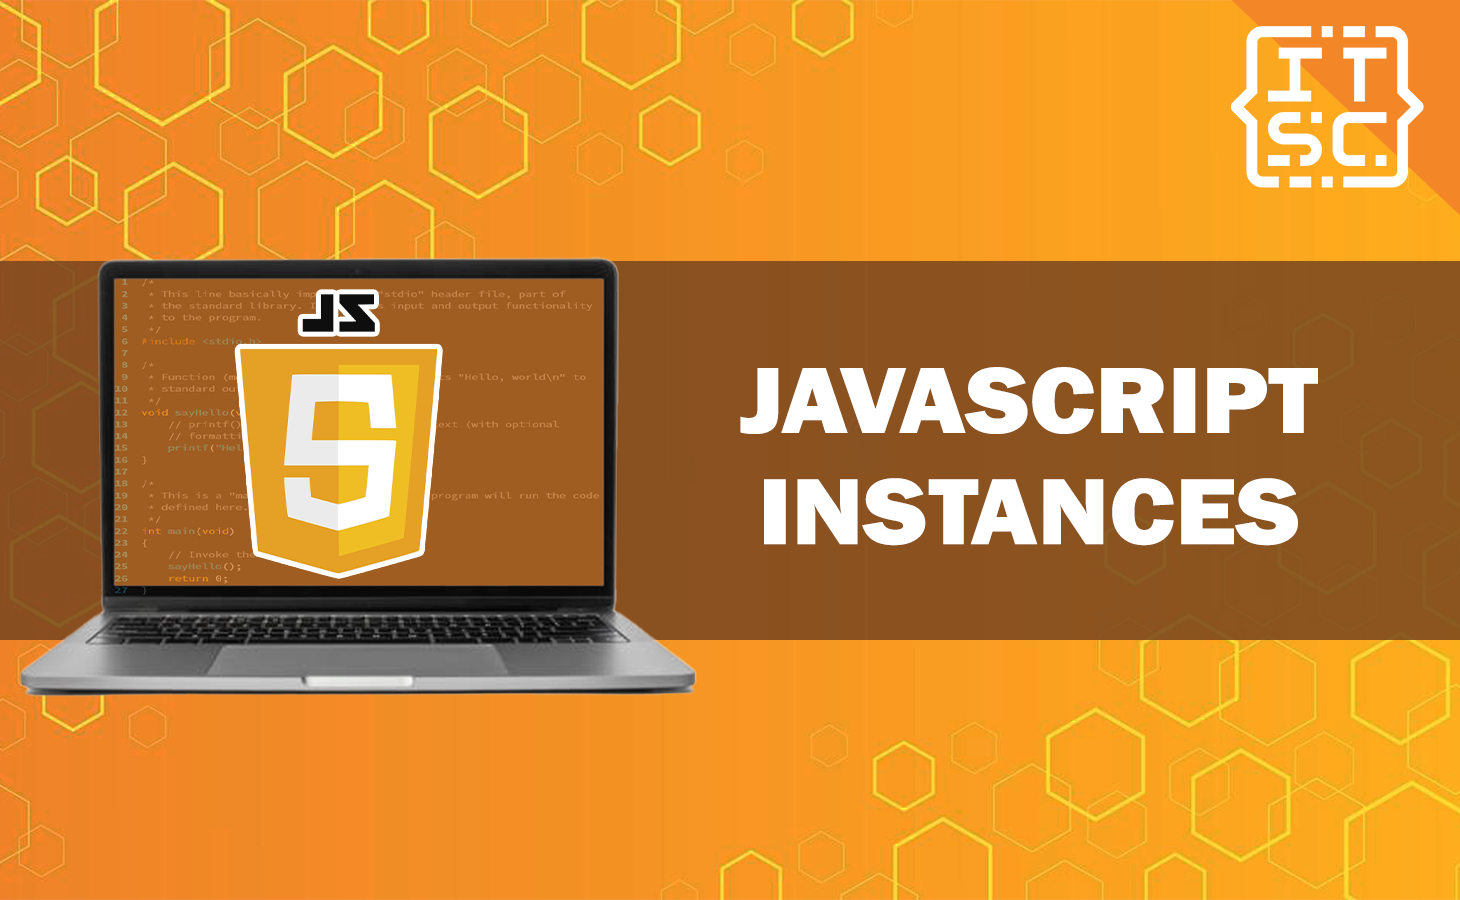 Javascript instances